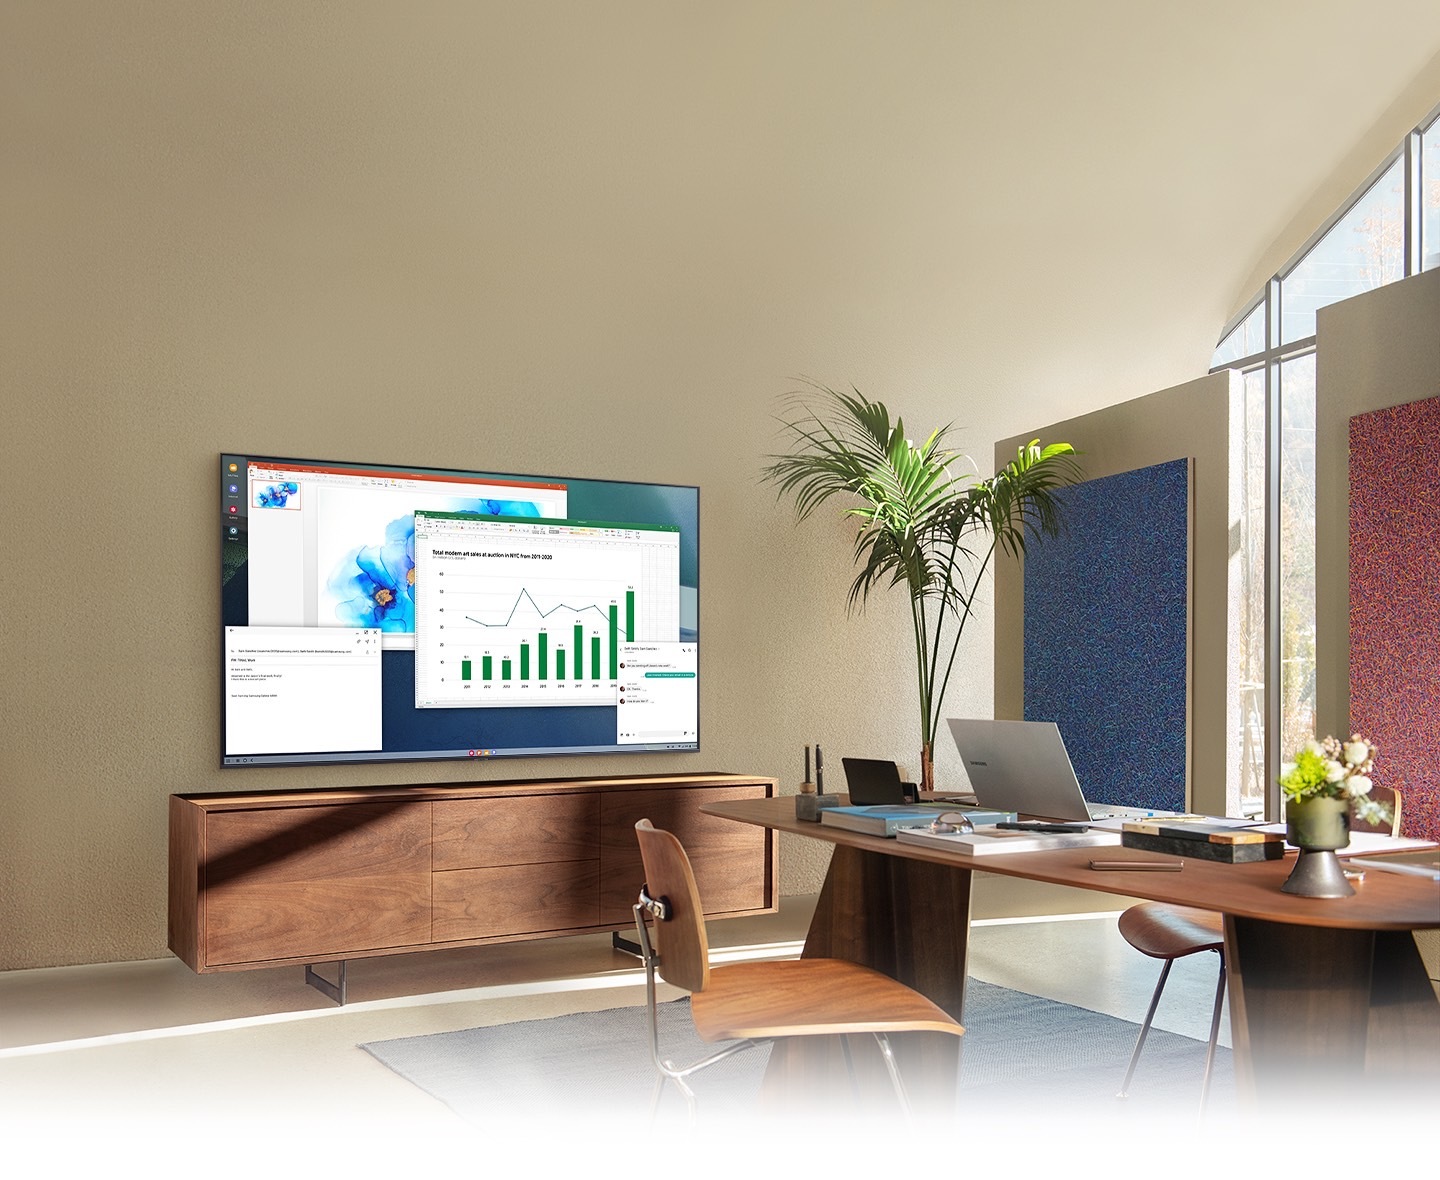 Në zyrën e shtëpisë së dhomës së ndenjes, ekrani i një televizori tregon funksionin e kompjuterit në televizor, i cili lejon televizorin e shtëpisë të lidhet me kompjuterin e zyrës.